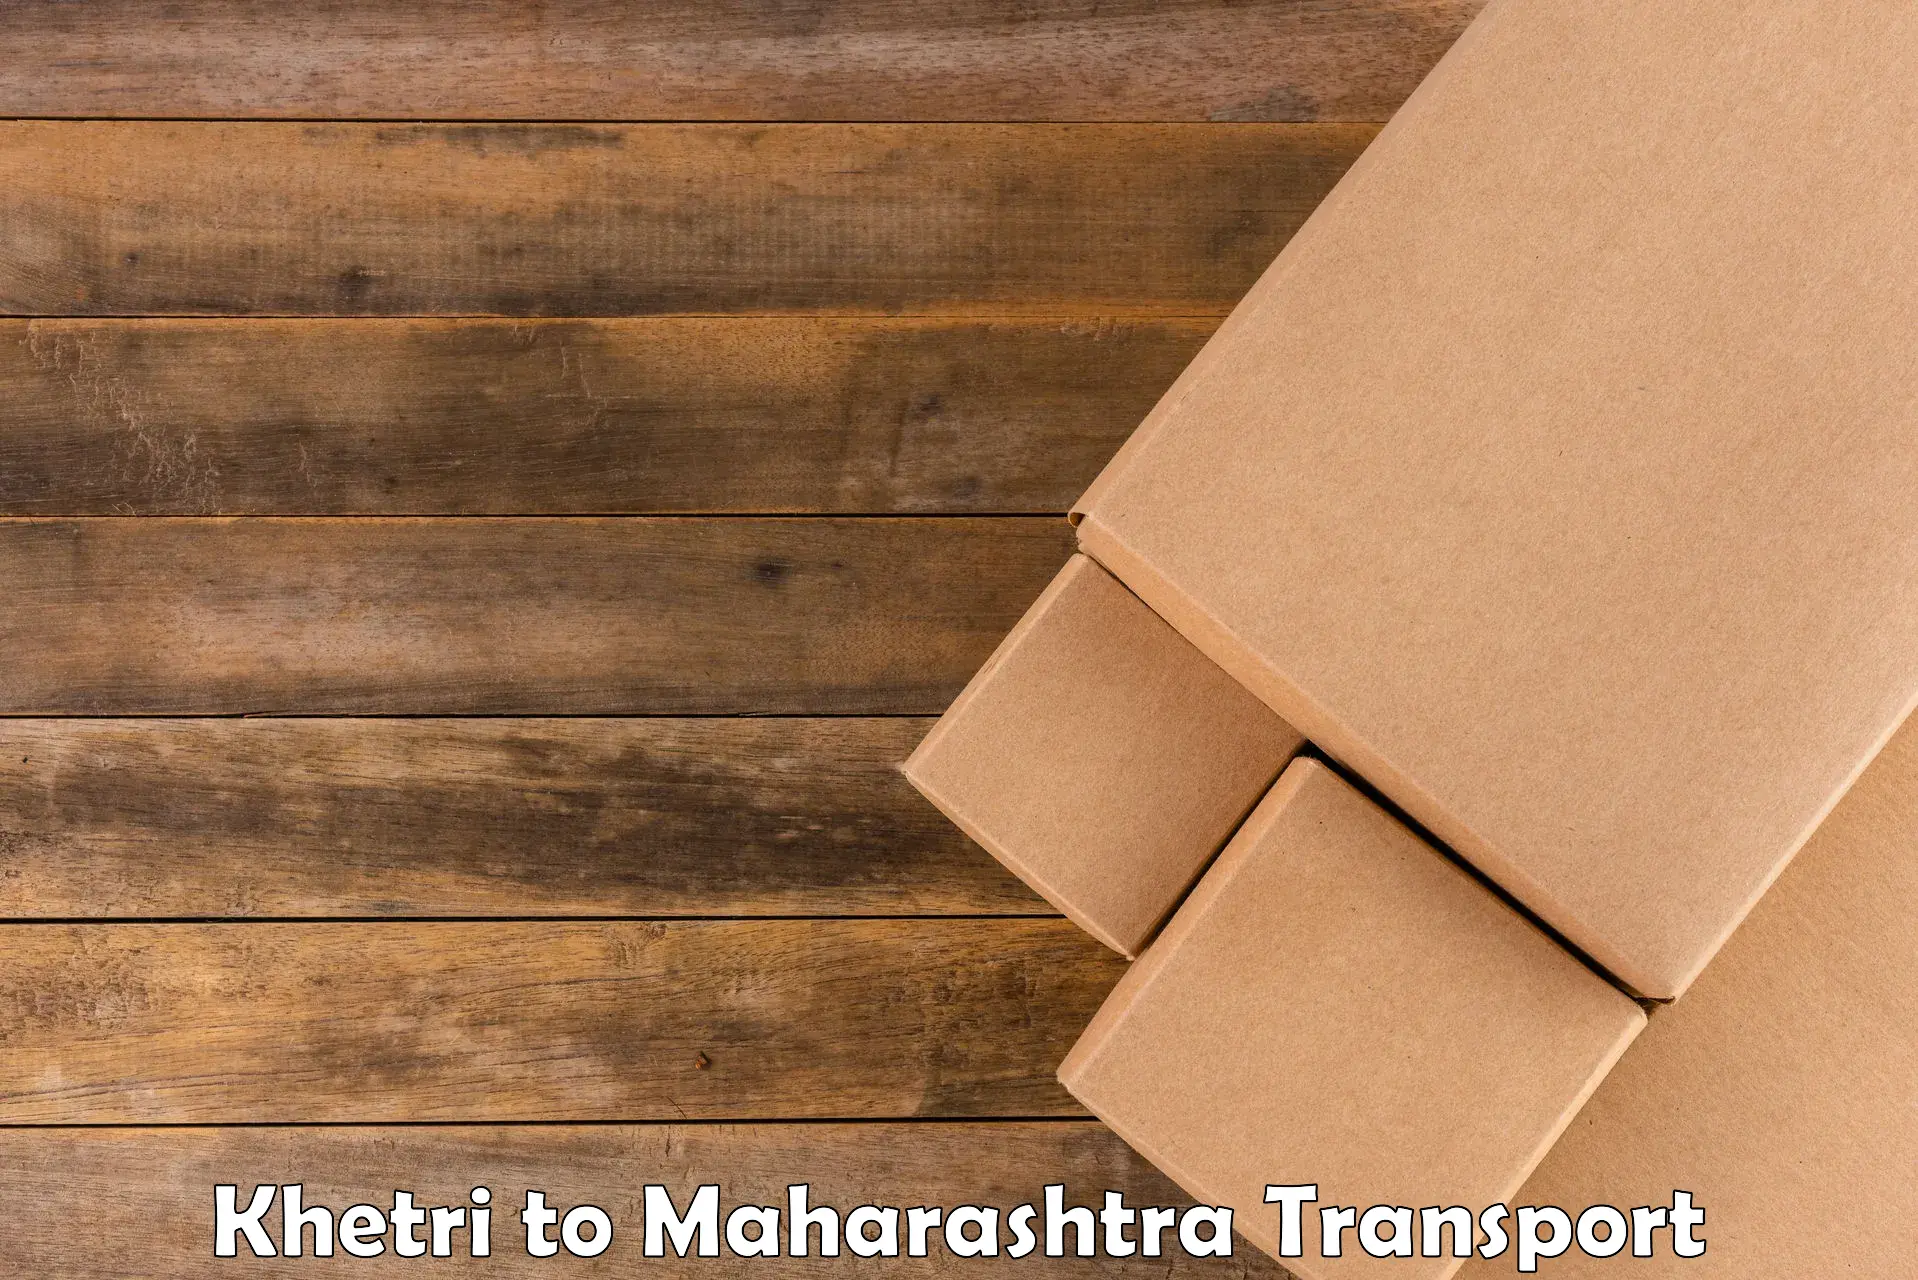 Bike transport service Khetri to Mumbai University